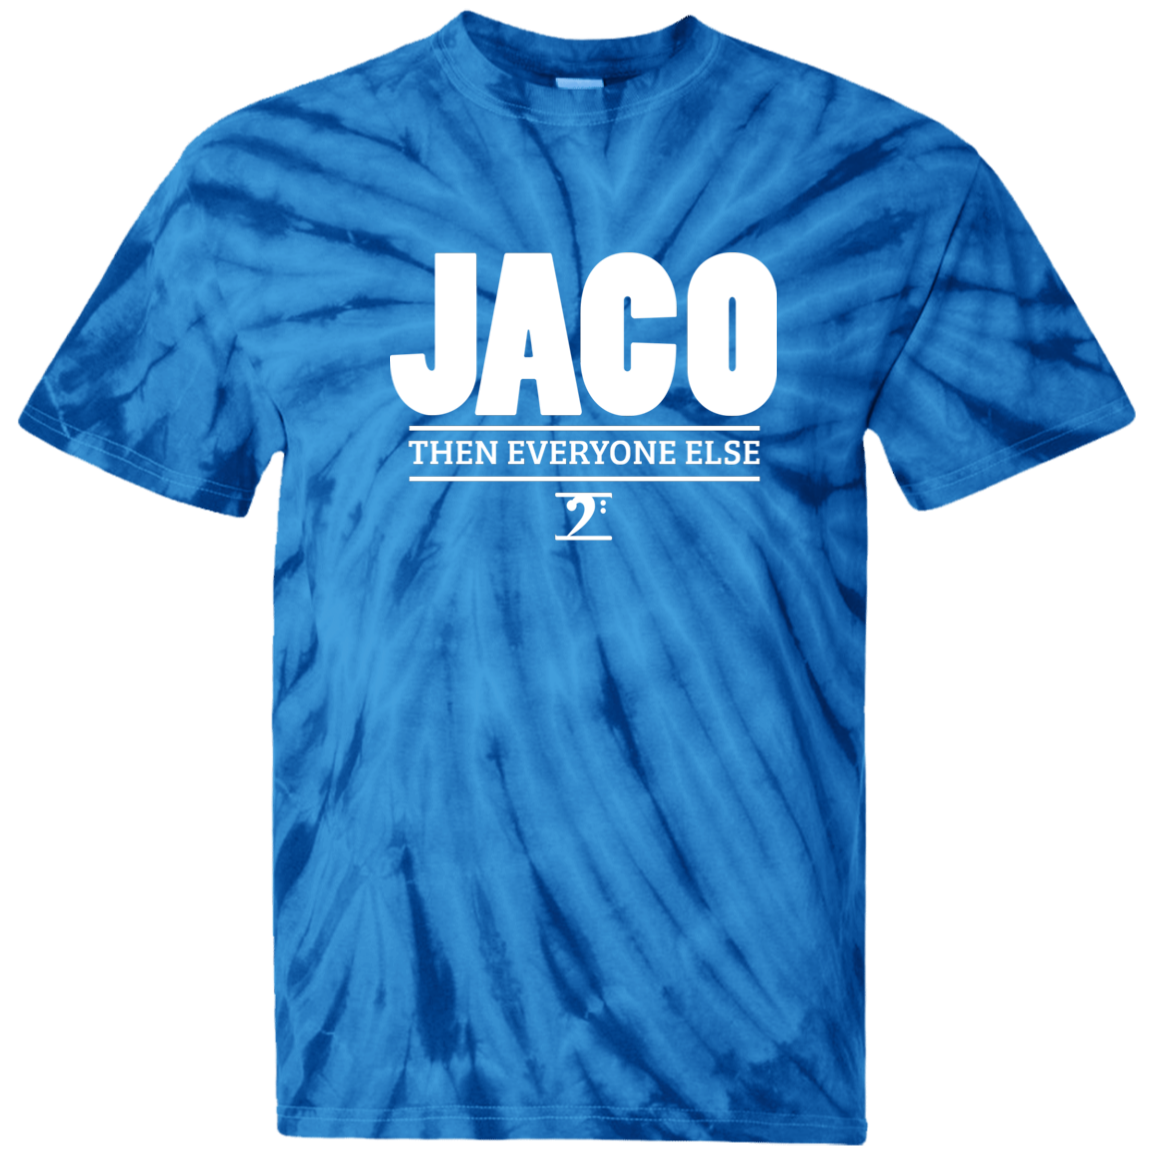 JACO Tie Dye T-Shirt - Lathon Bass Wear